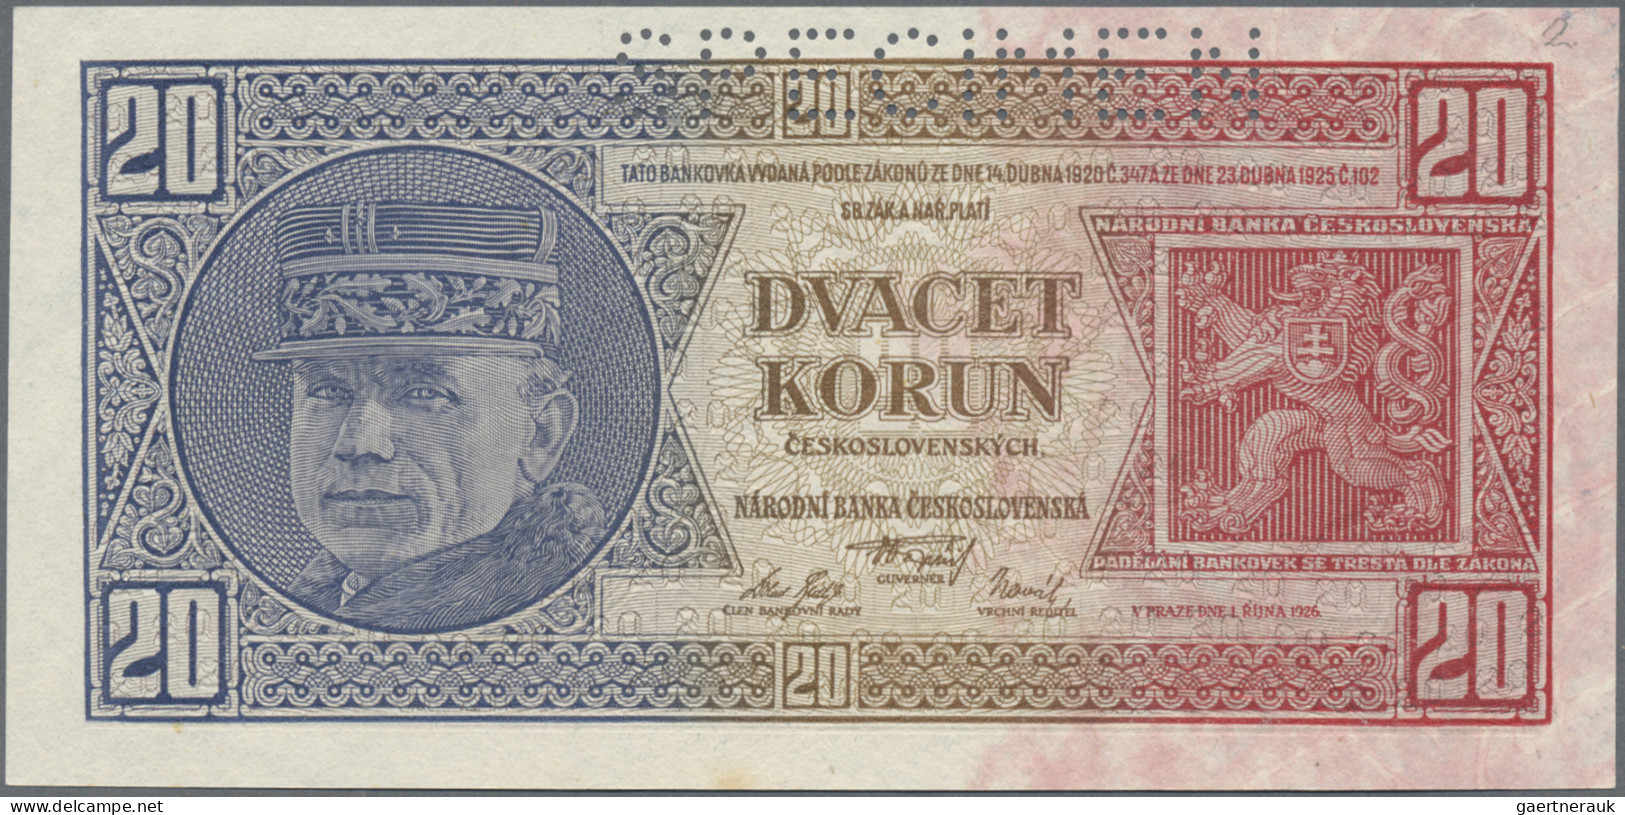 Czechoslovakia: Narodná Banka Československá, lot with 7 banknotes, comprising 1